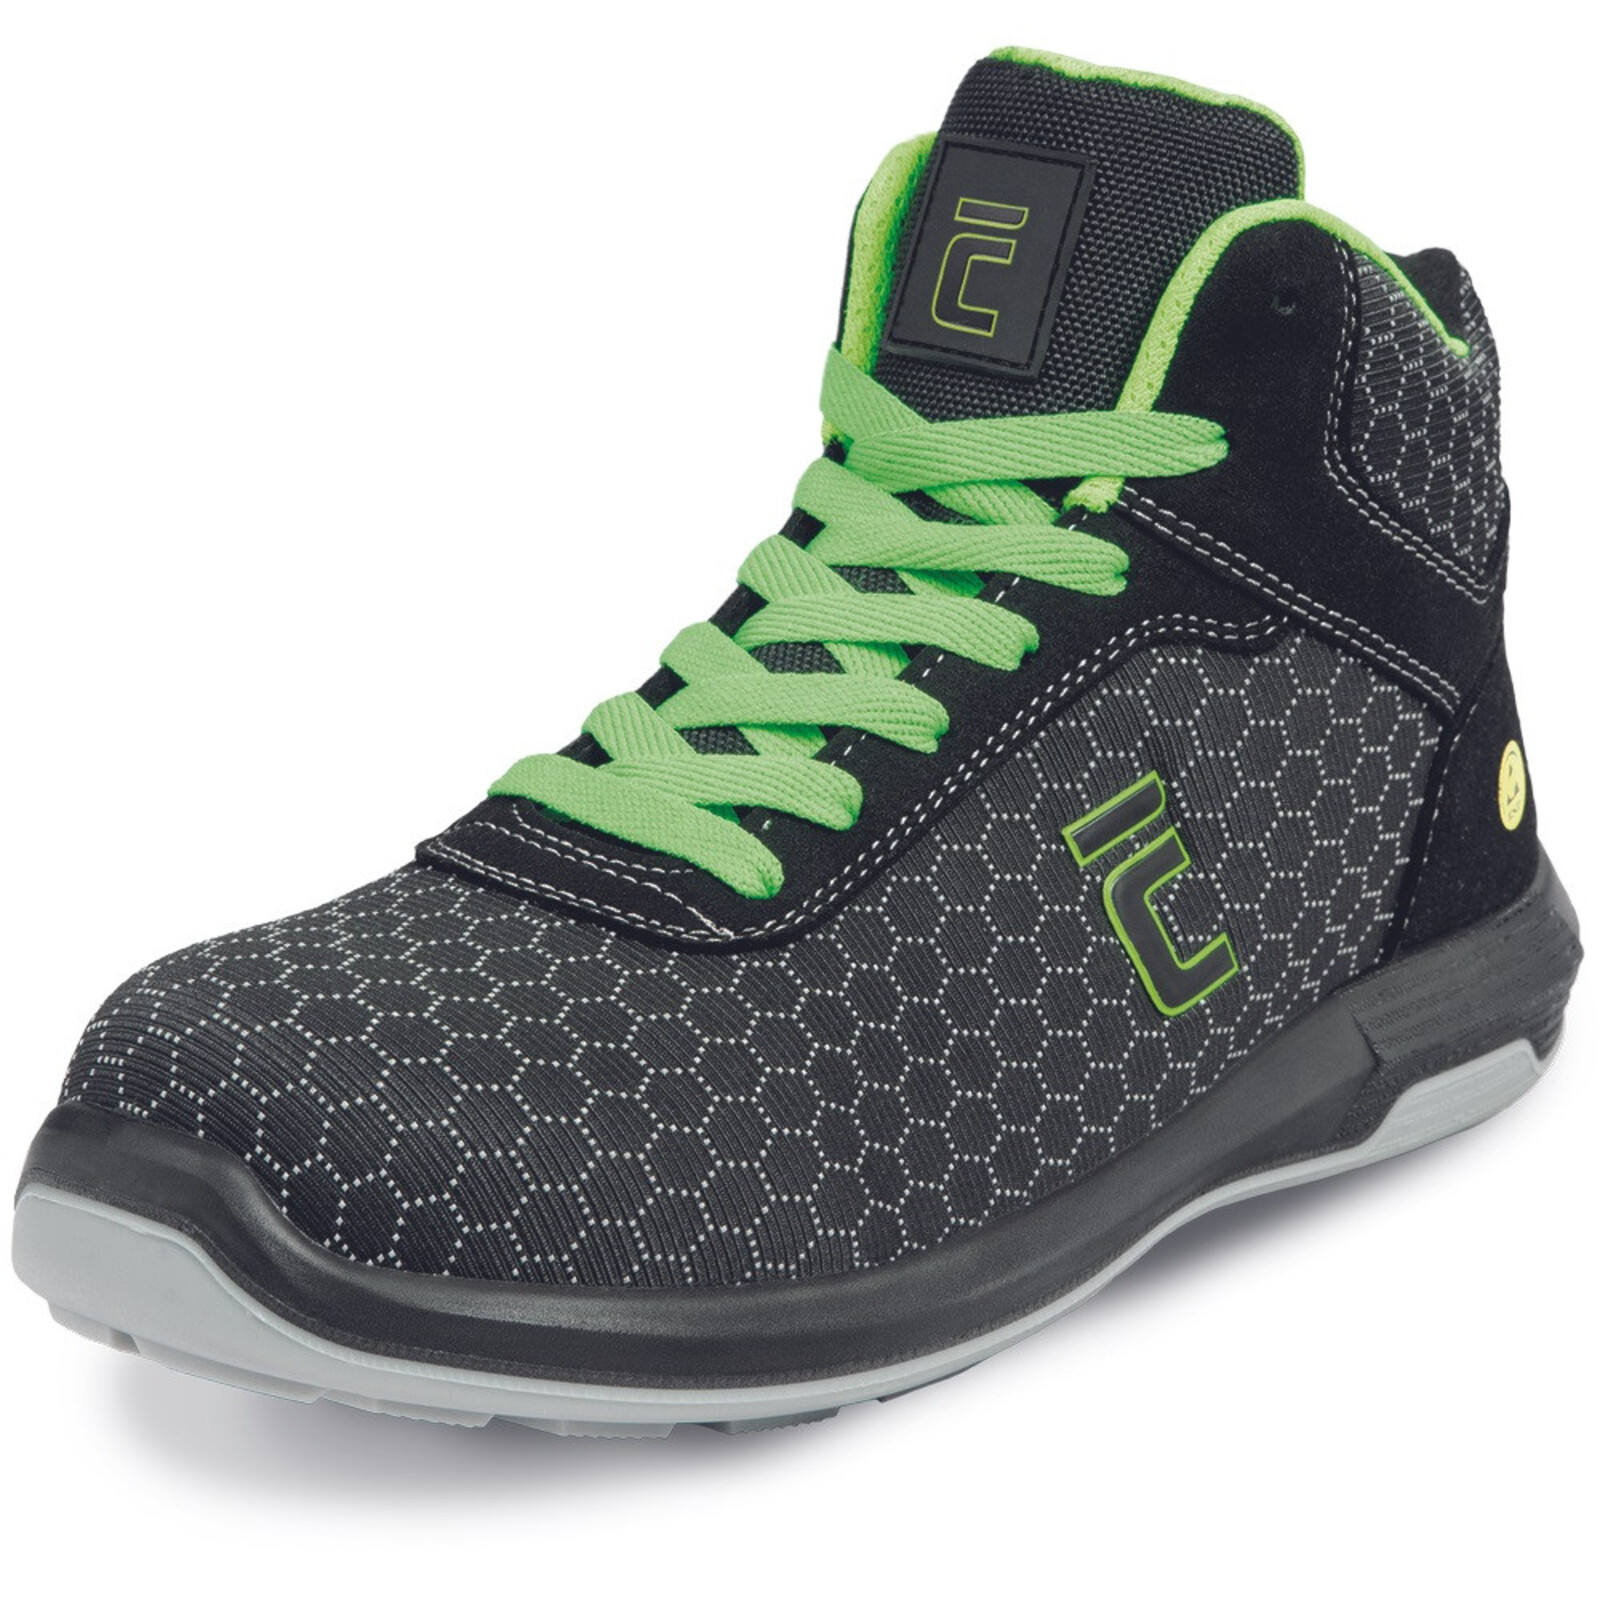 Bezpečnostná členková obuv Cerva Uttendorf MF ESD S3S SR - veľkosť: 36, farba: čierna/zelená